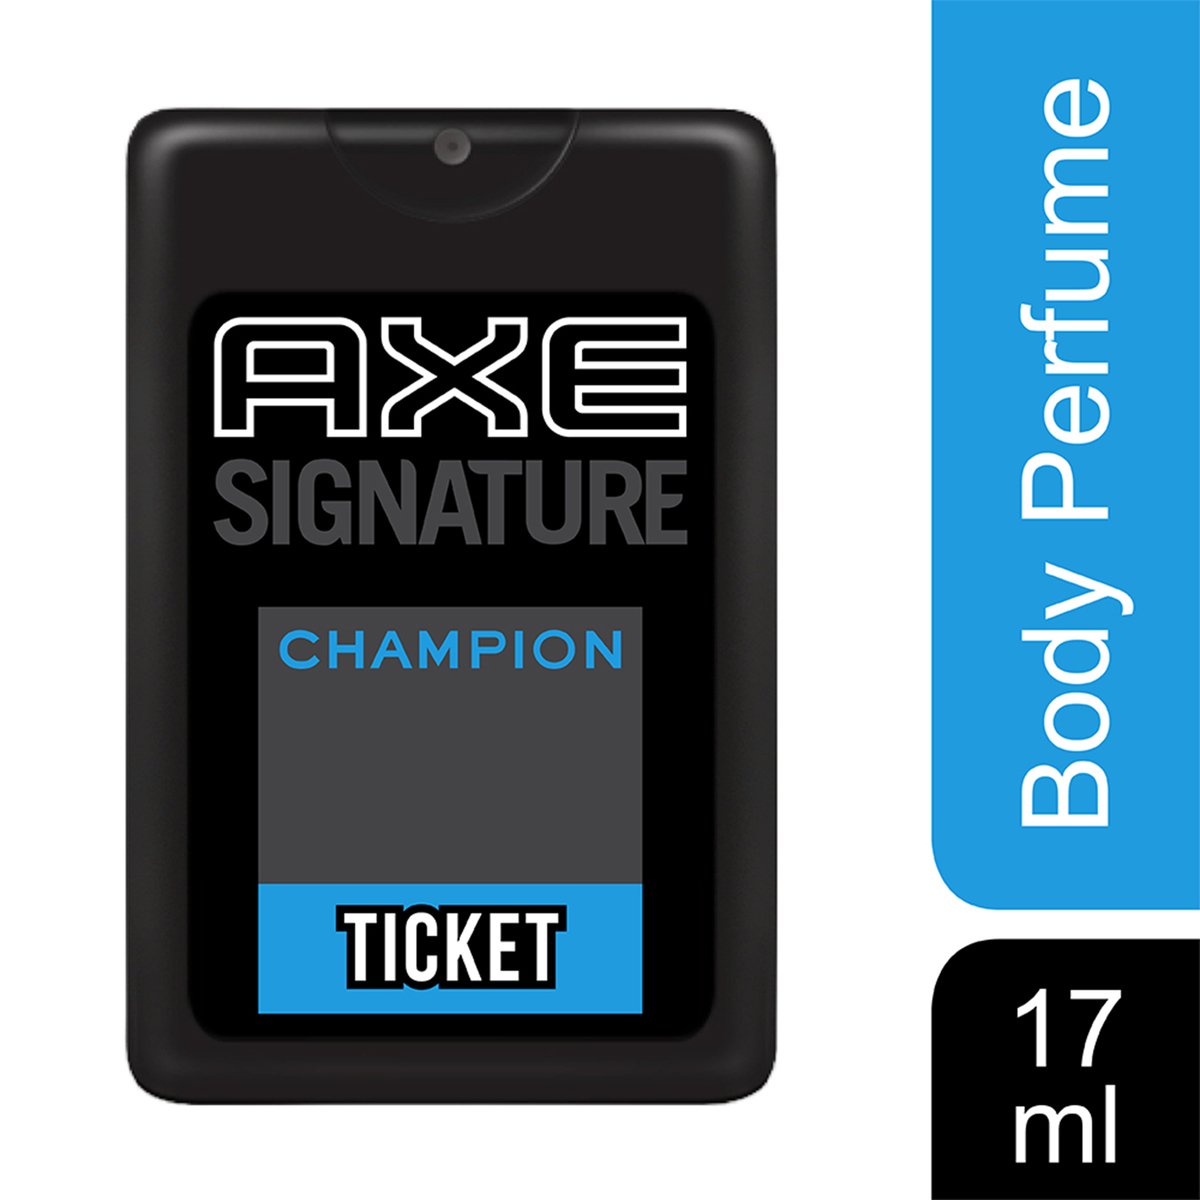 Axe Ticket Perfume Champion 17ml